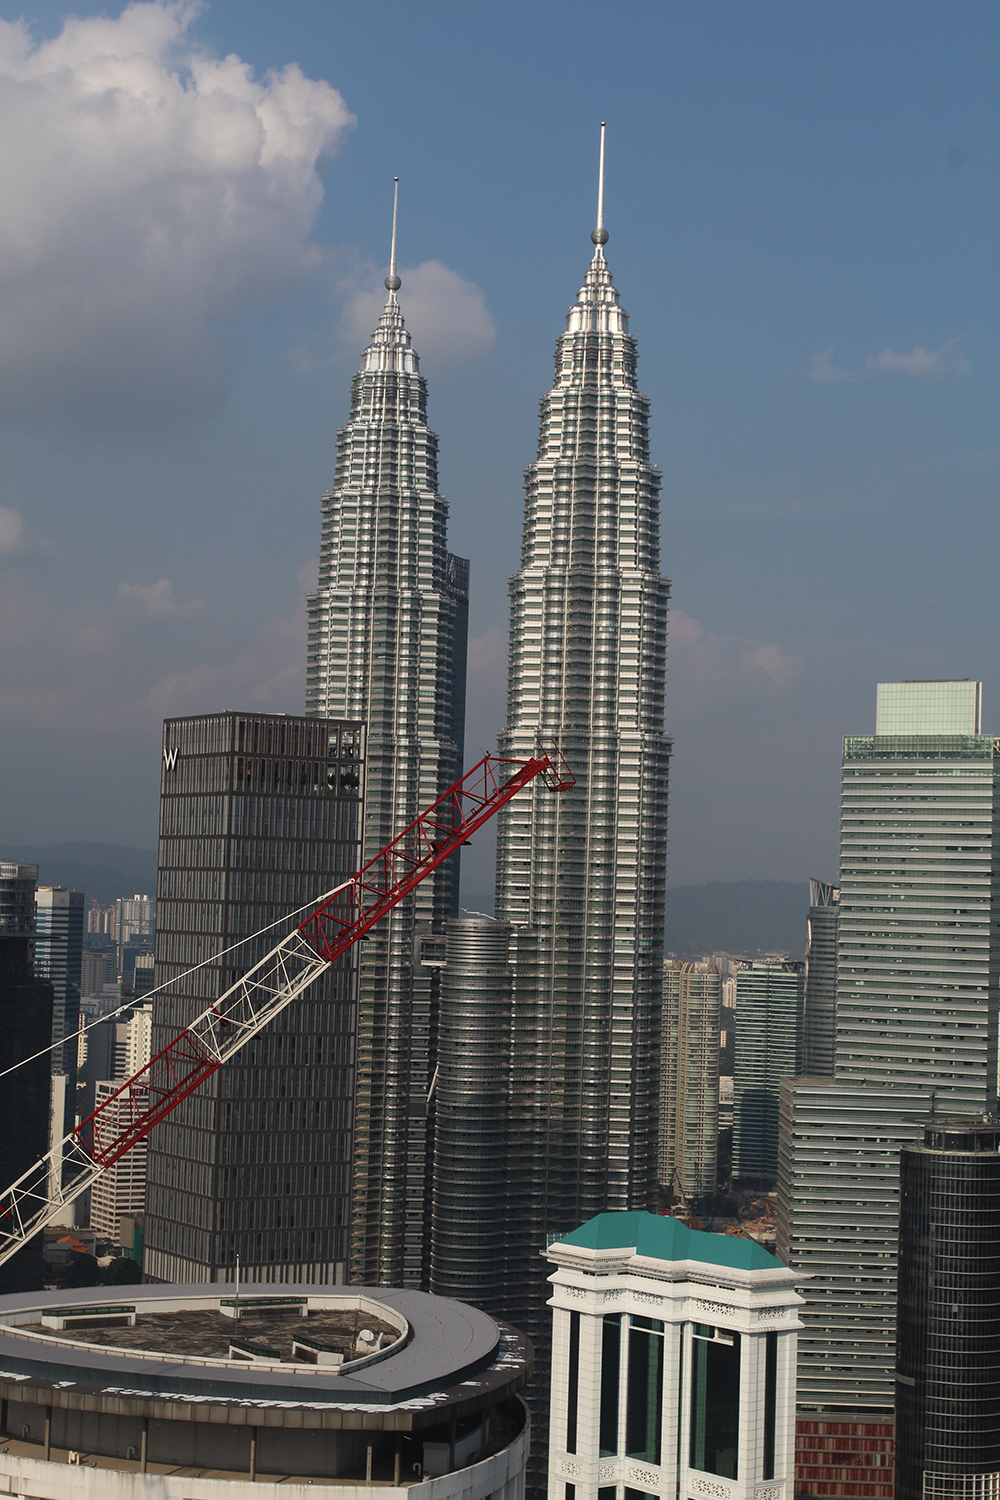 Les célèbres Petronas Towers, les deux tours jumelles les plus hautes du monde, que l’on peut visiter bien entendu.